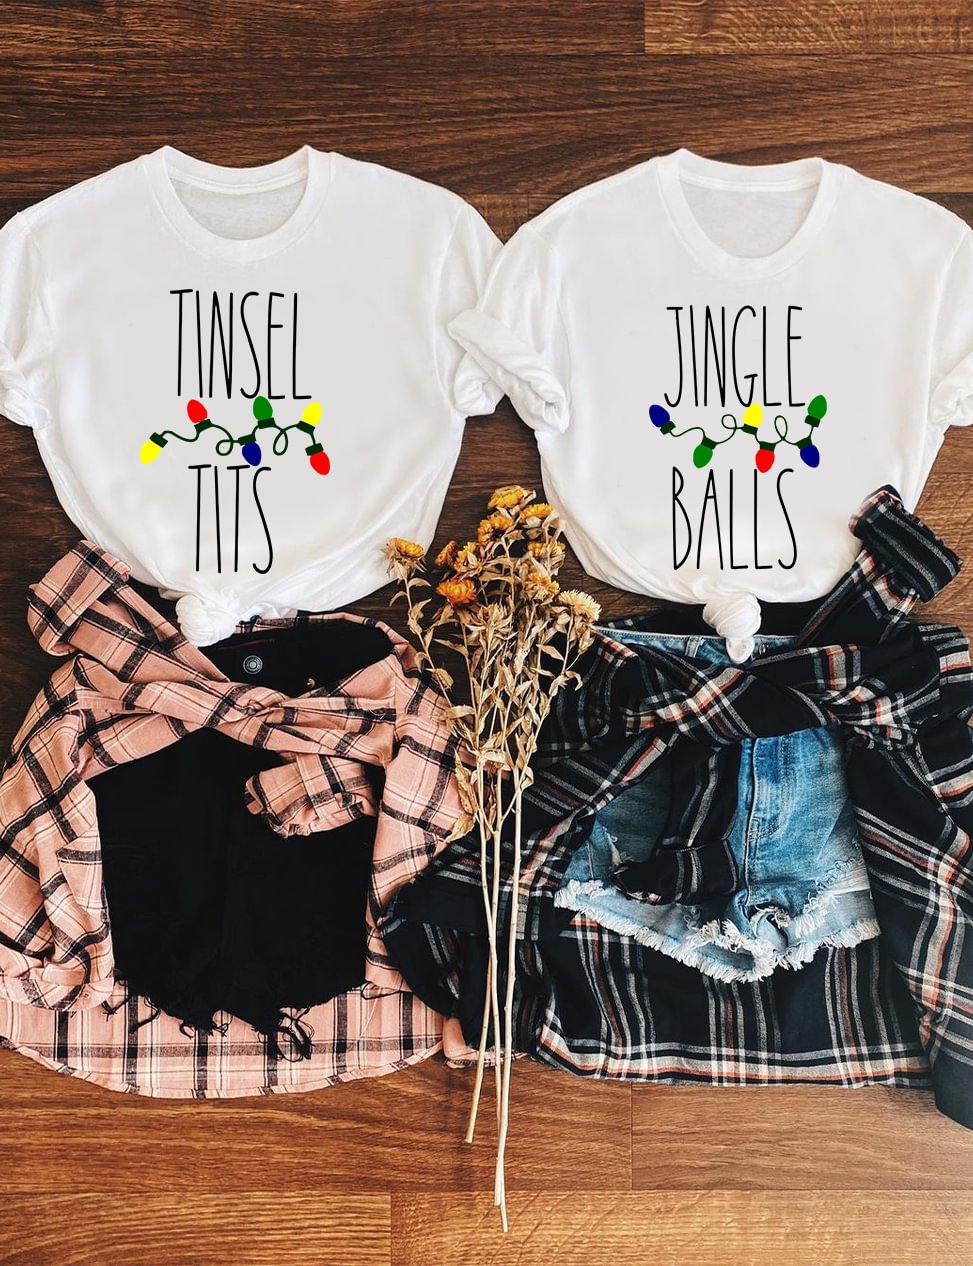 Jingle Balls and Tinsel Tits T-Shirt